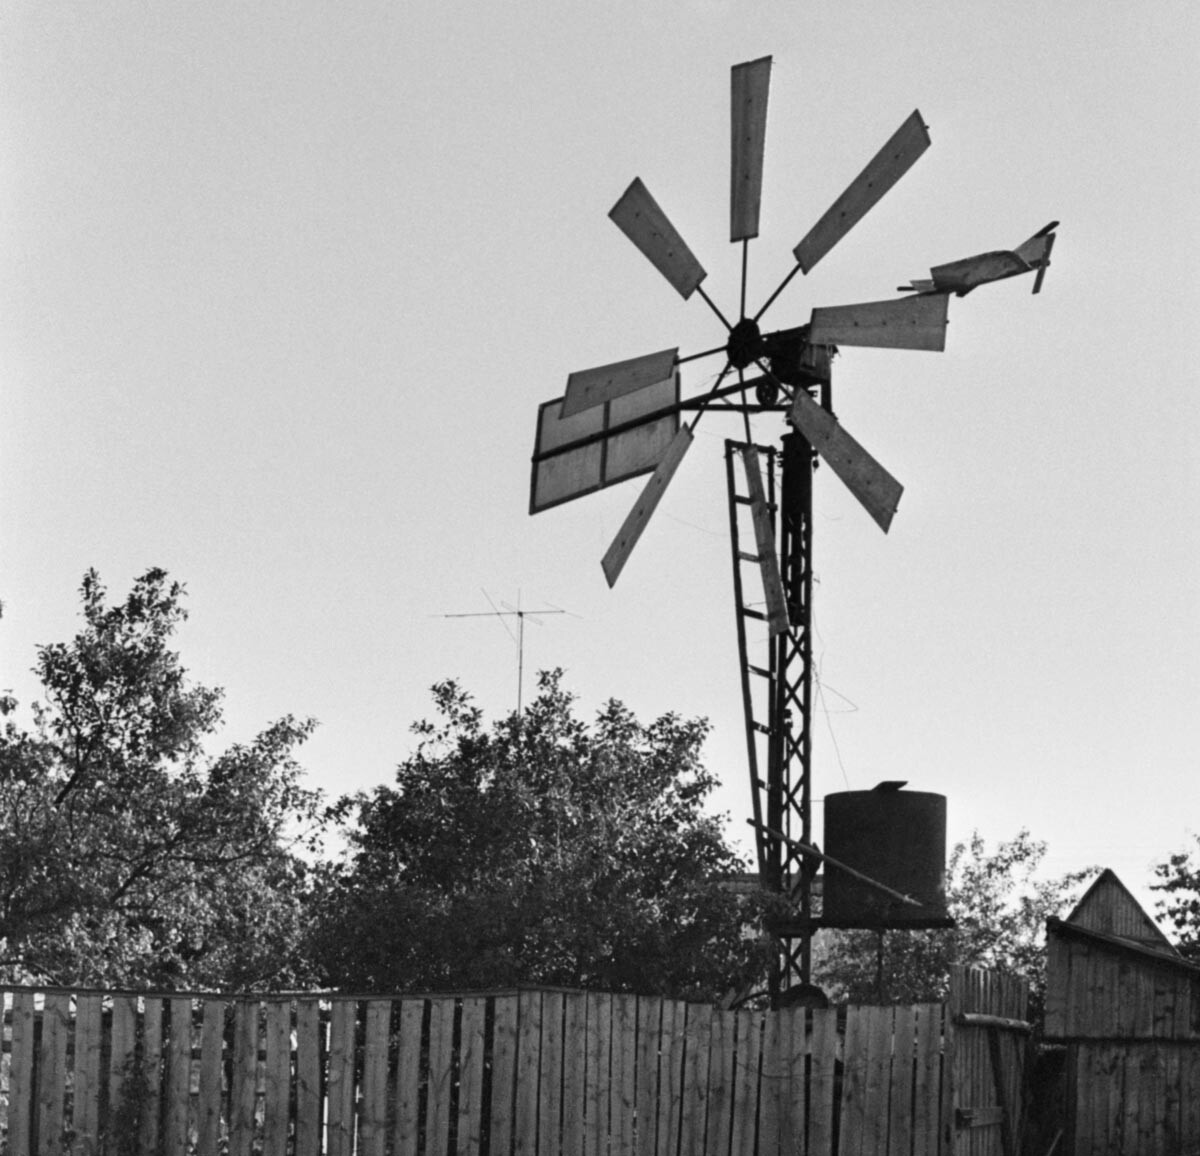 Брјанск, 1. јула 1994. године. Ветрогенератор који је конструисао Јевгениј Васиљевич Шилин.